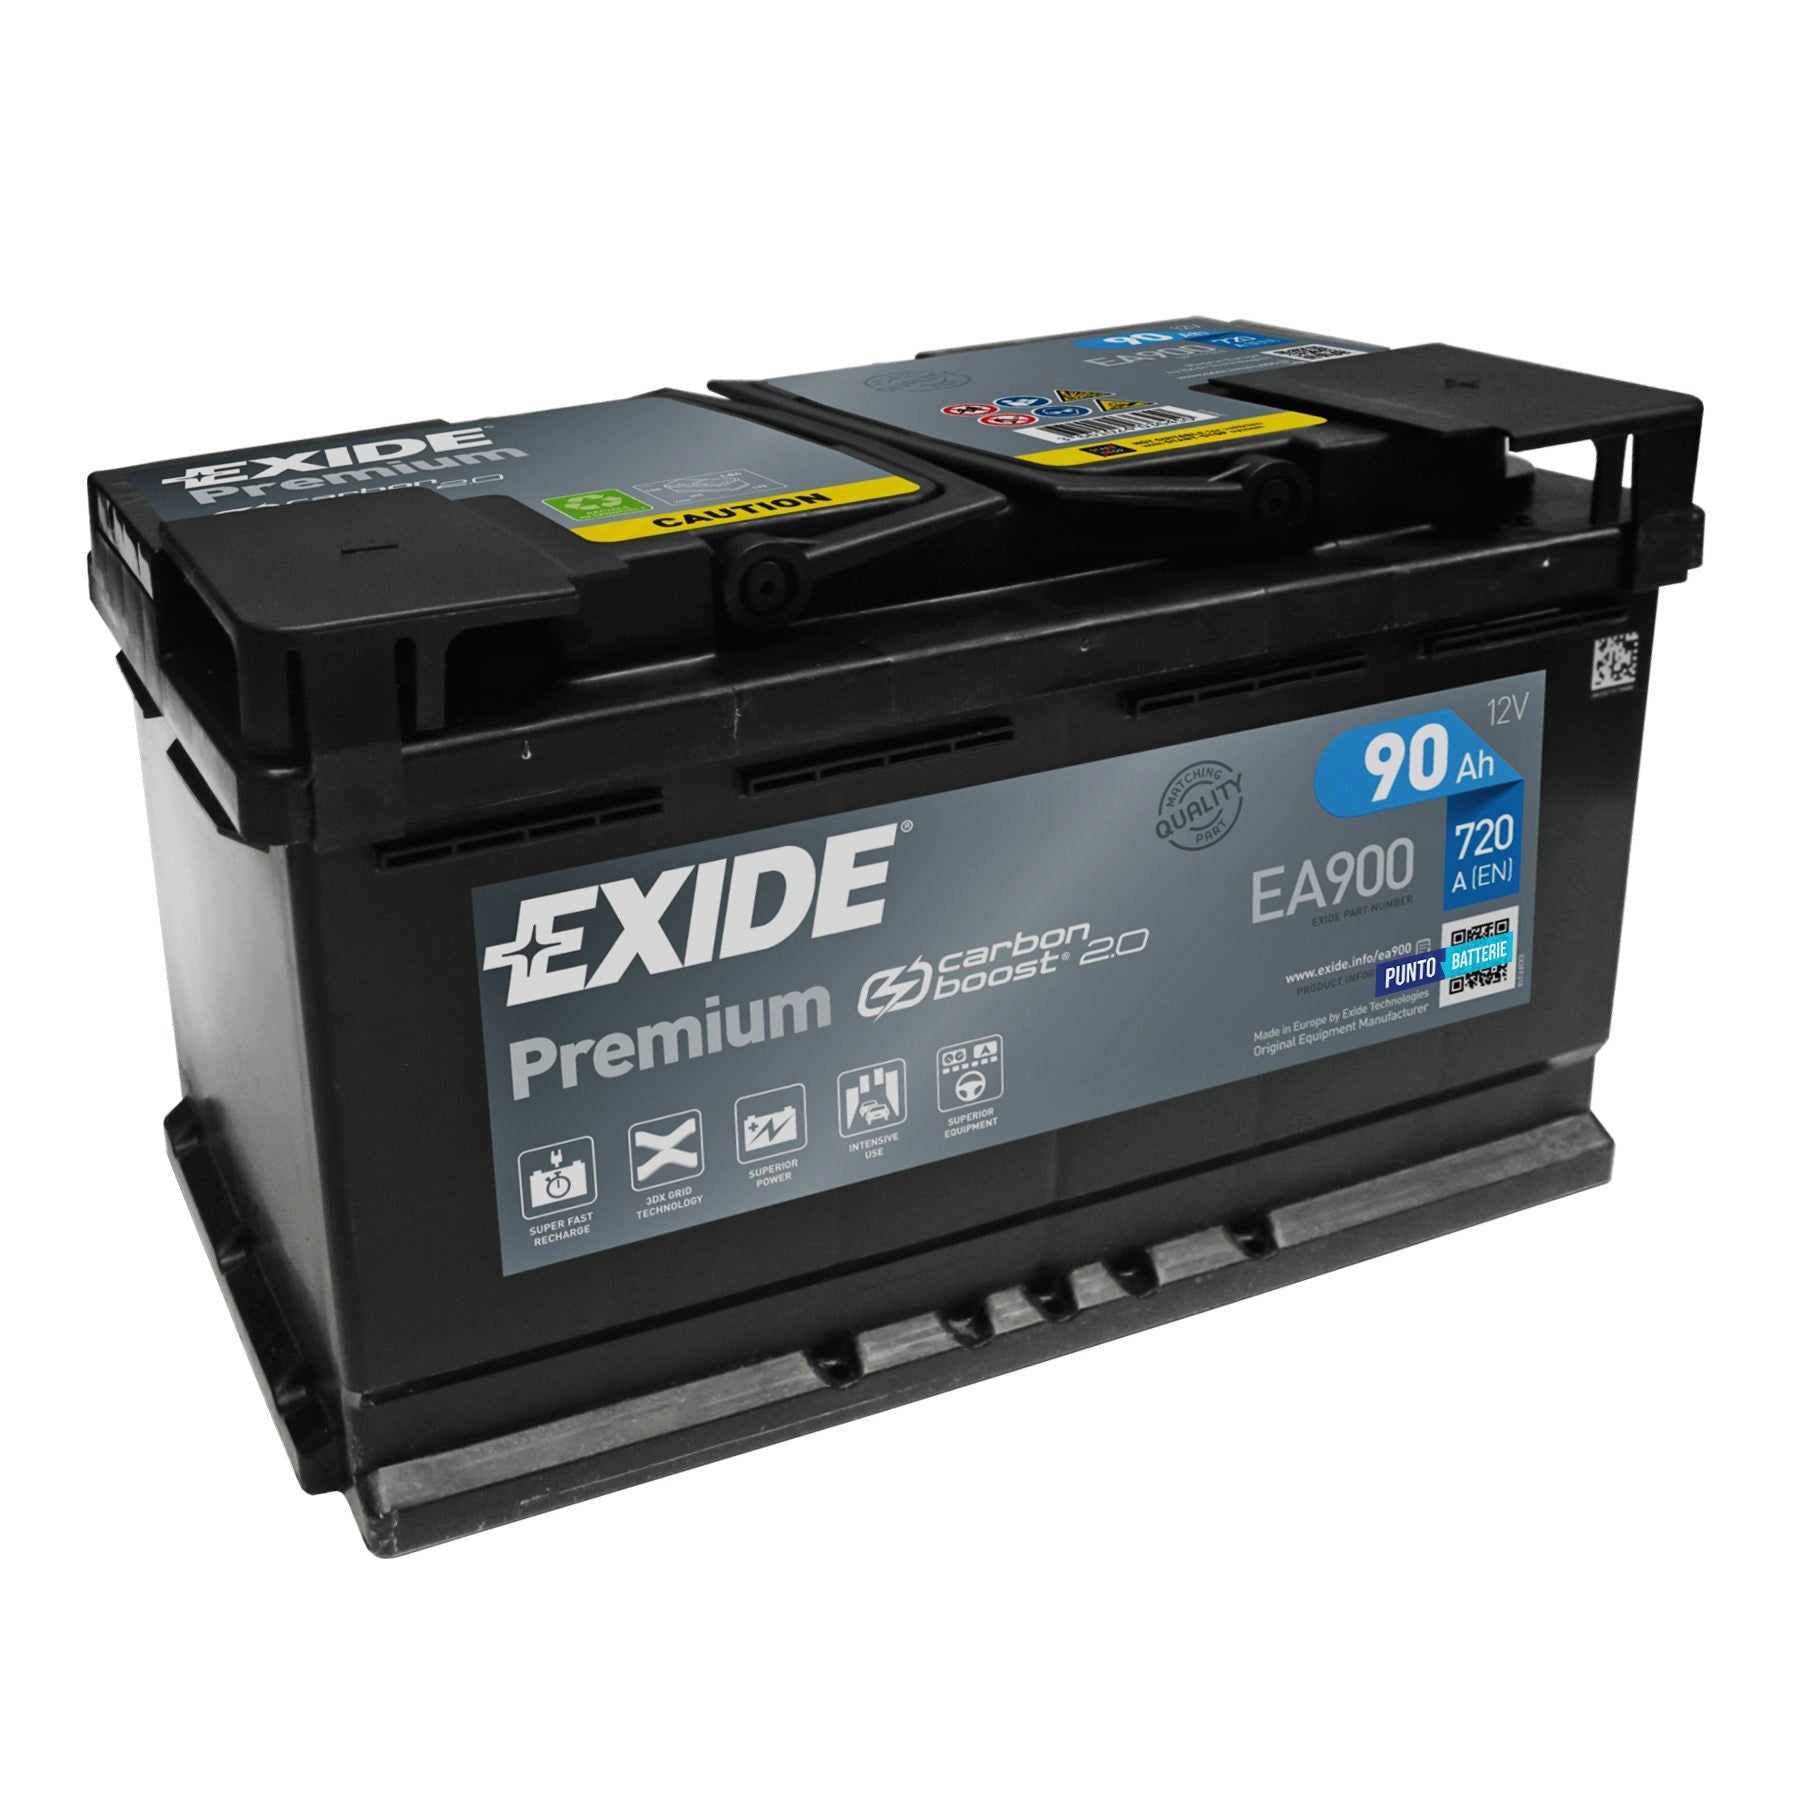 Batteria originale Exide Premium EA900, dimensioni 315 x 175 x 190, polo positivo a destra, 12 volt, 90 amperora, 720 ampere. Batteria per auto e veicoli leggeri.